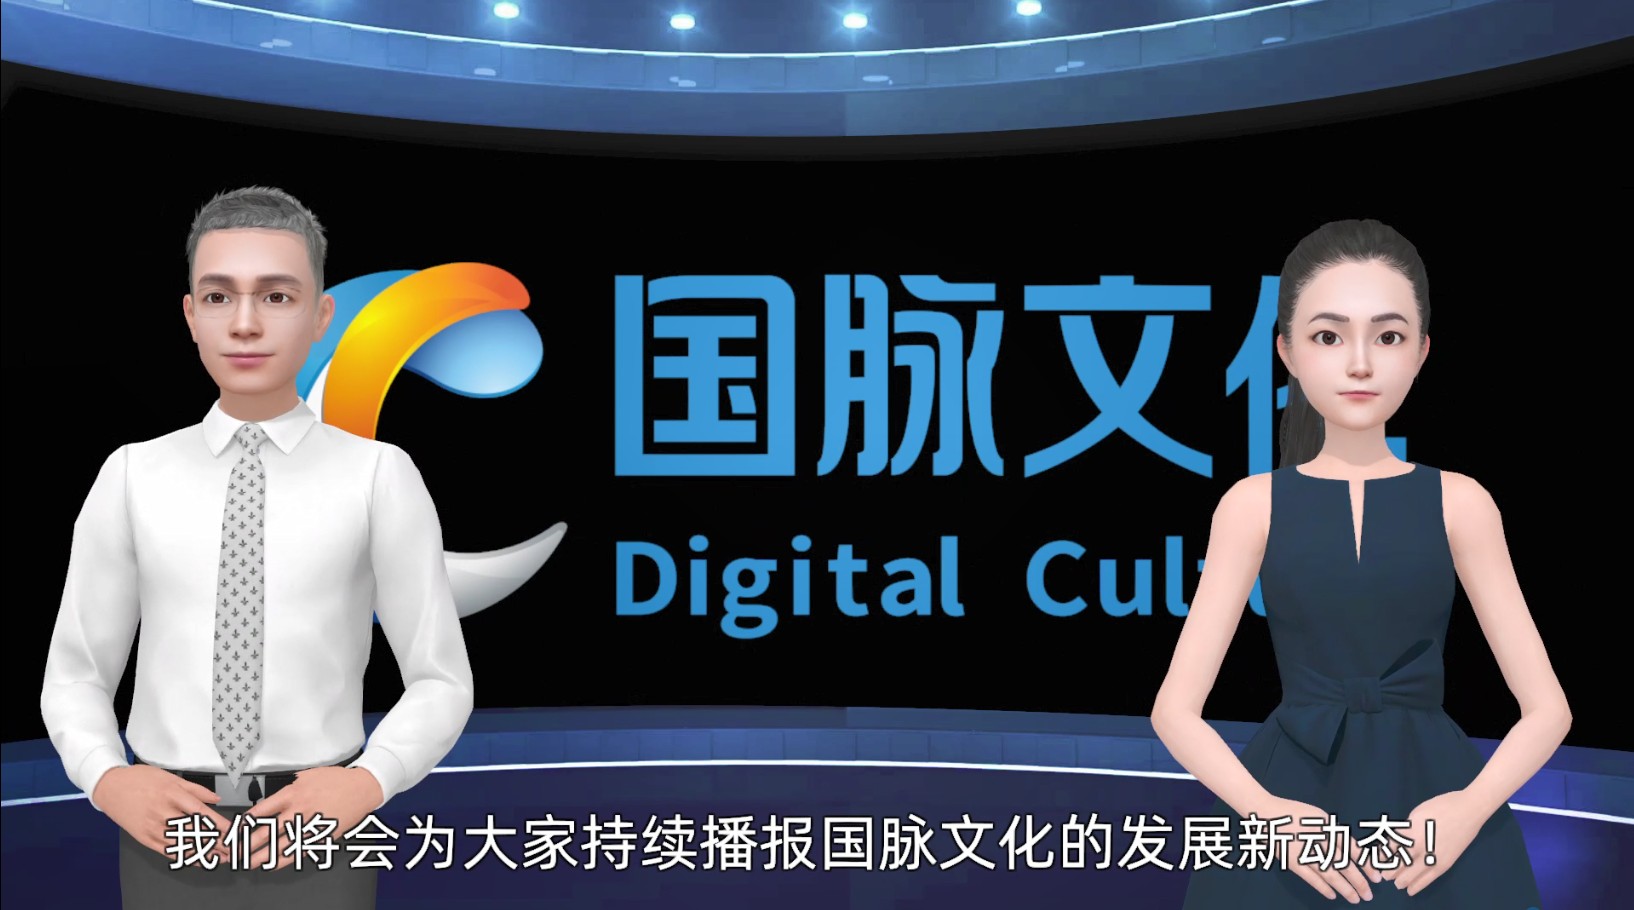 中国电信旗下国脉文化公司正式推出企业数智虚拟人